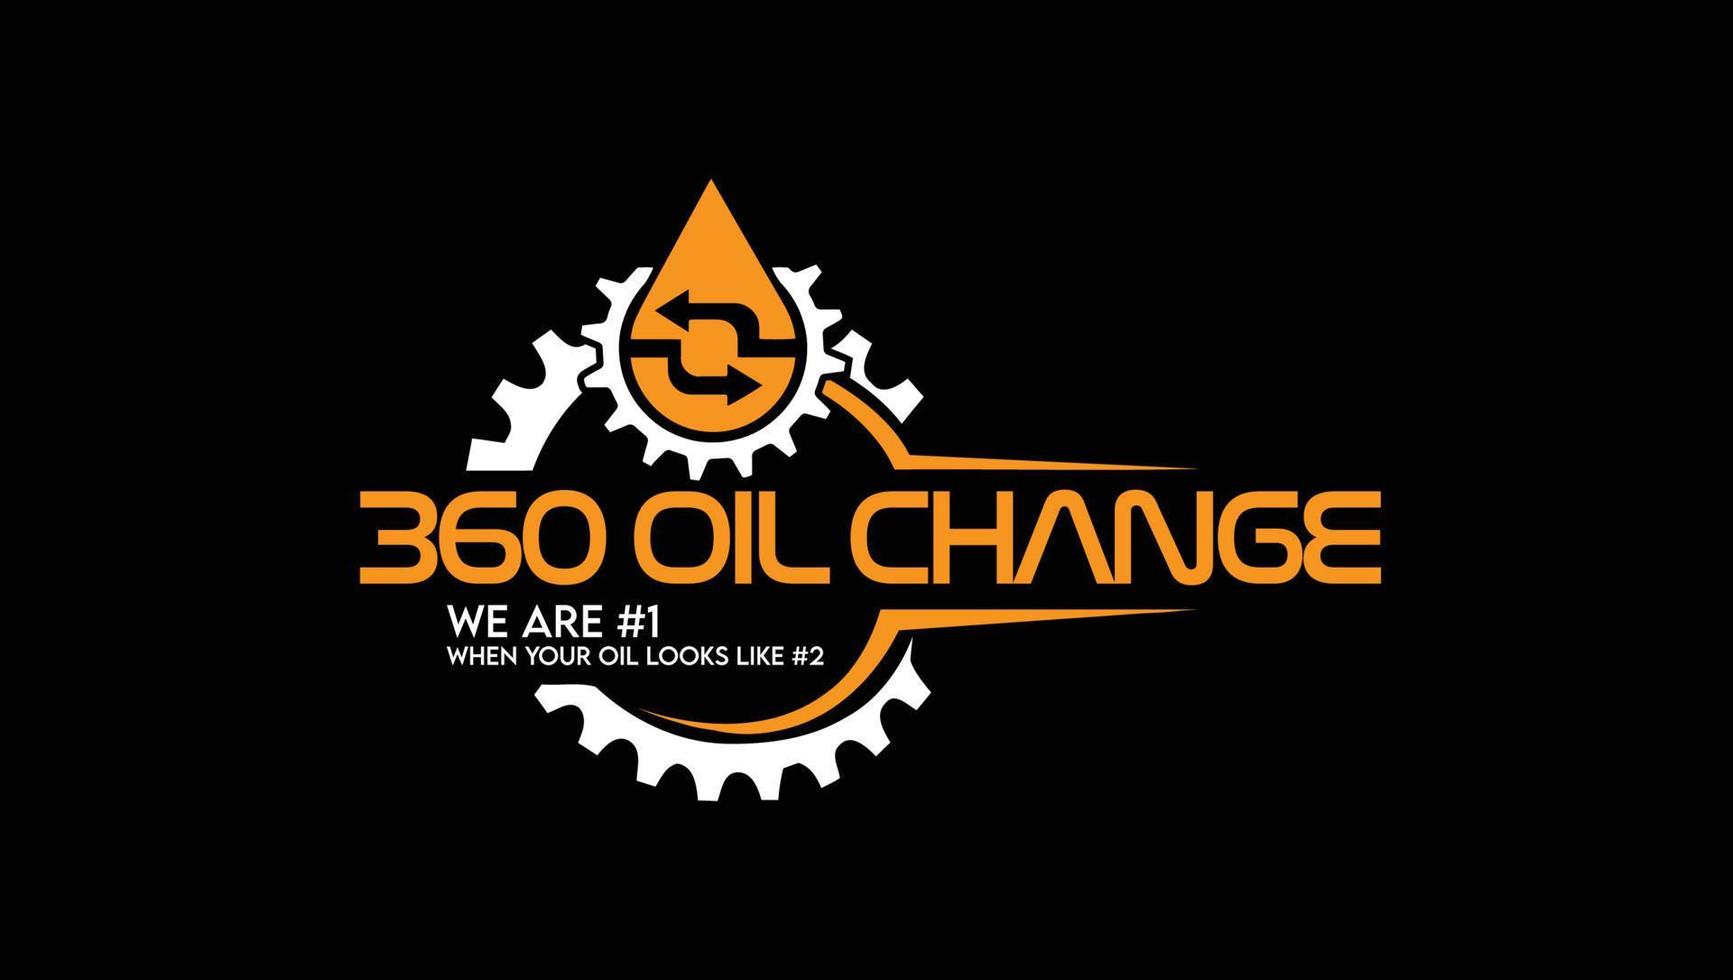 360 logo de cambio de aceite imágenes vectores gratis, fotos de stock